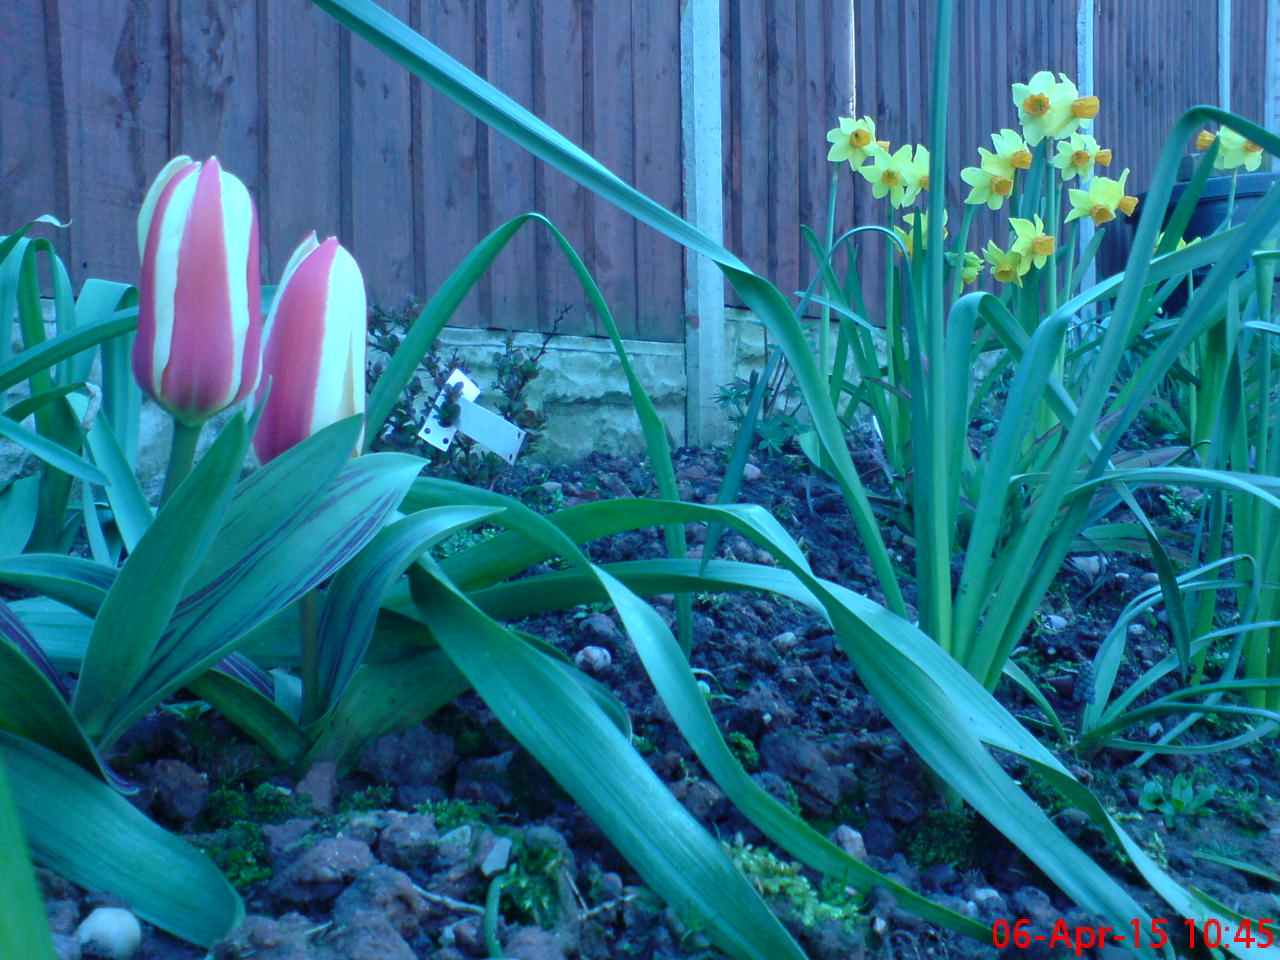 ImagesGarden/2015-04 Daffodils & Tulips.jpg